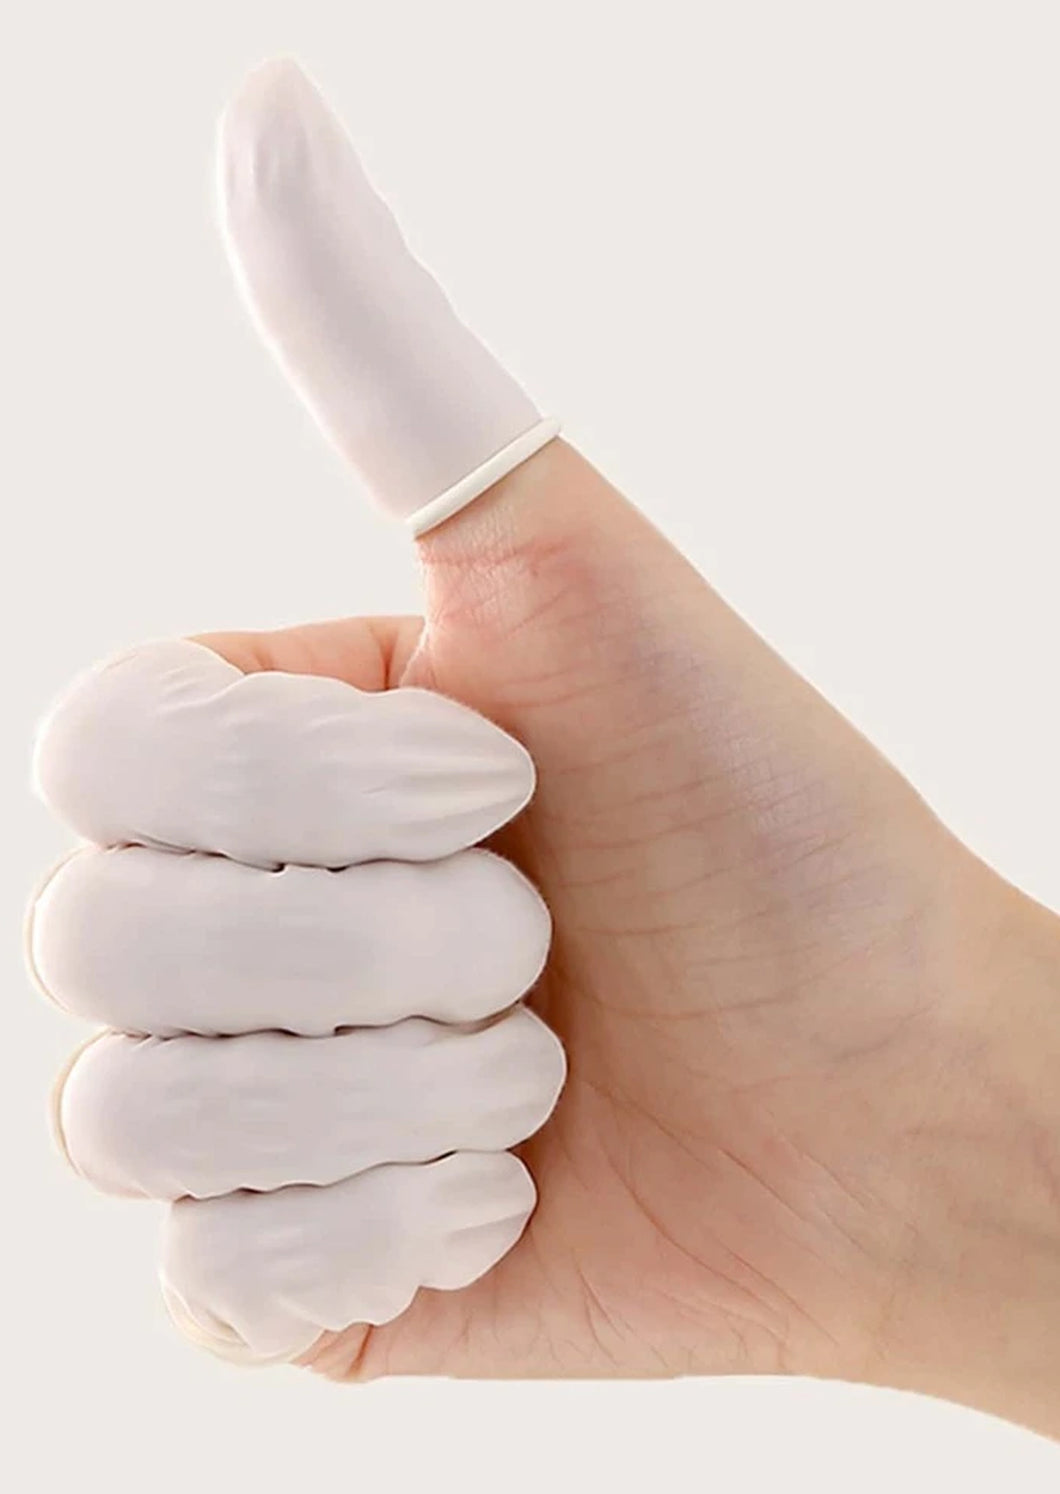 Finger Gloves 50's – Indi & Oak